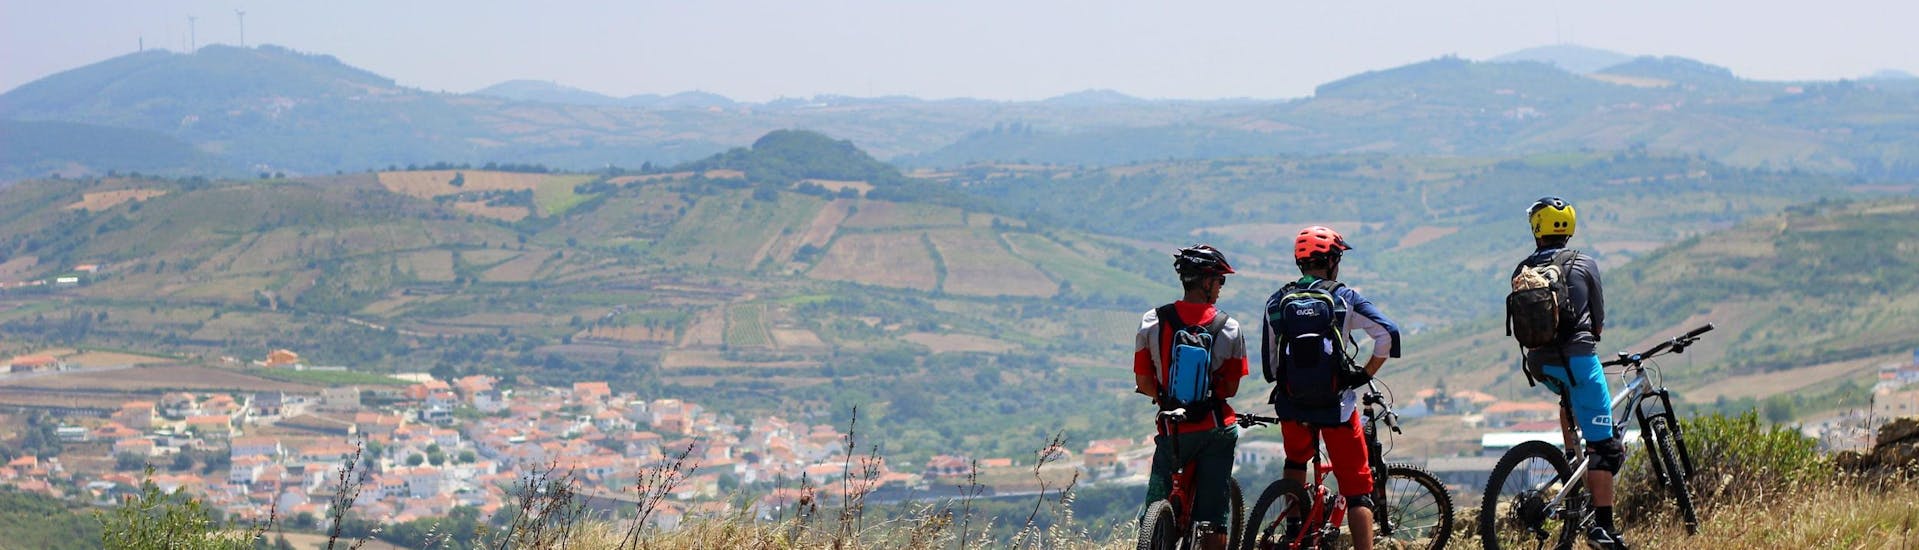 Mountain Bike Day Tour - Lisbon Area.